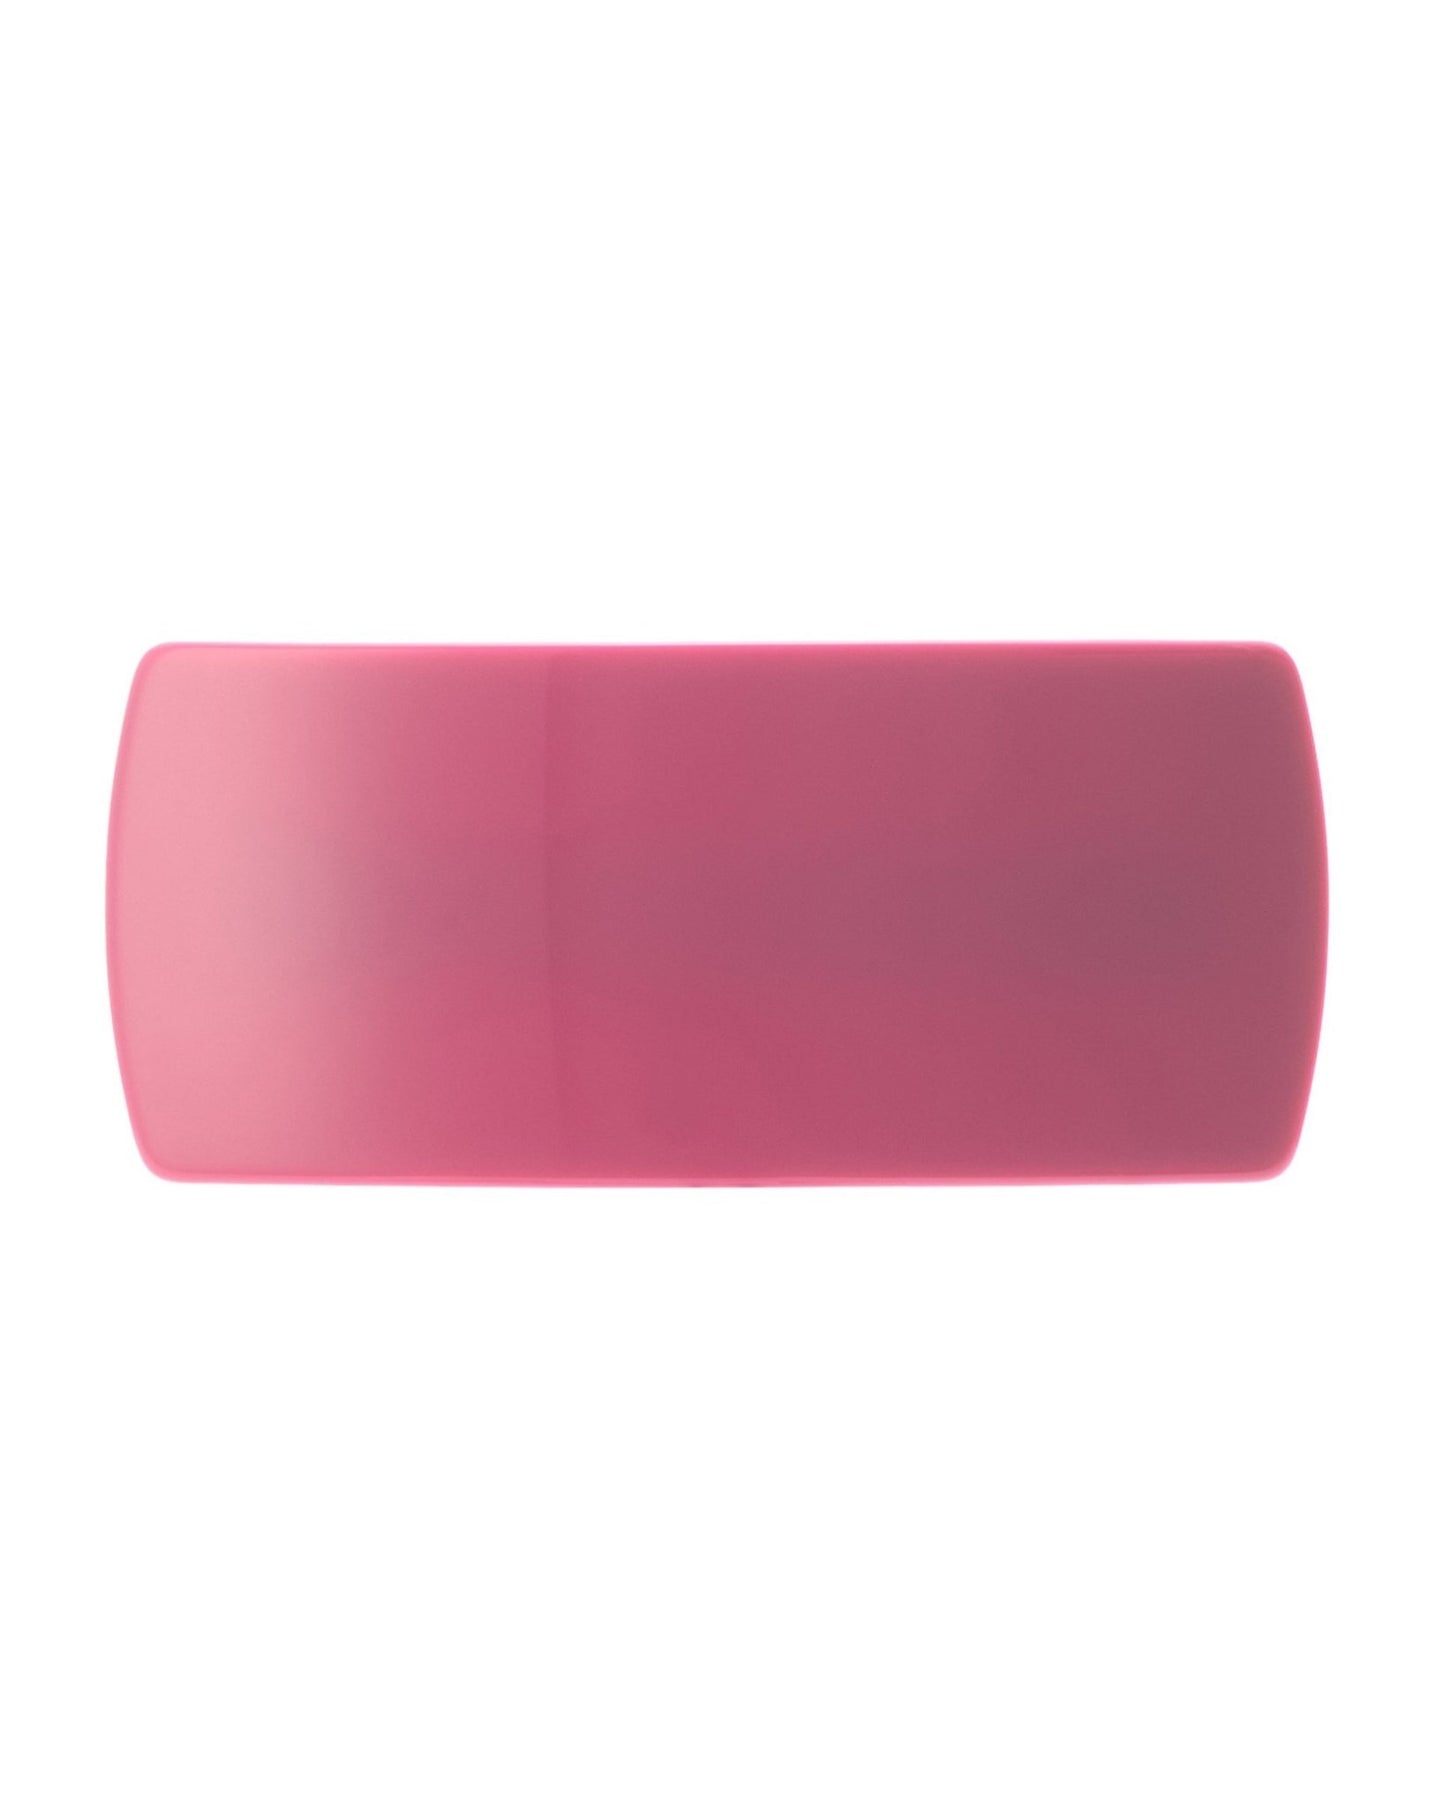 Jumbo Box Clip in Neon Pink - MACHETE